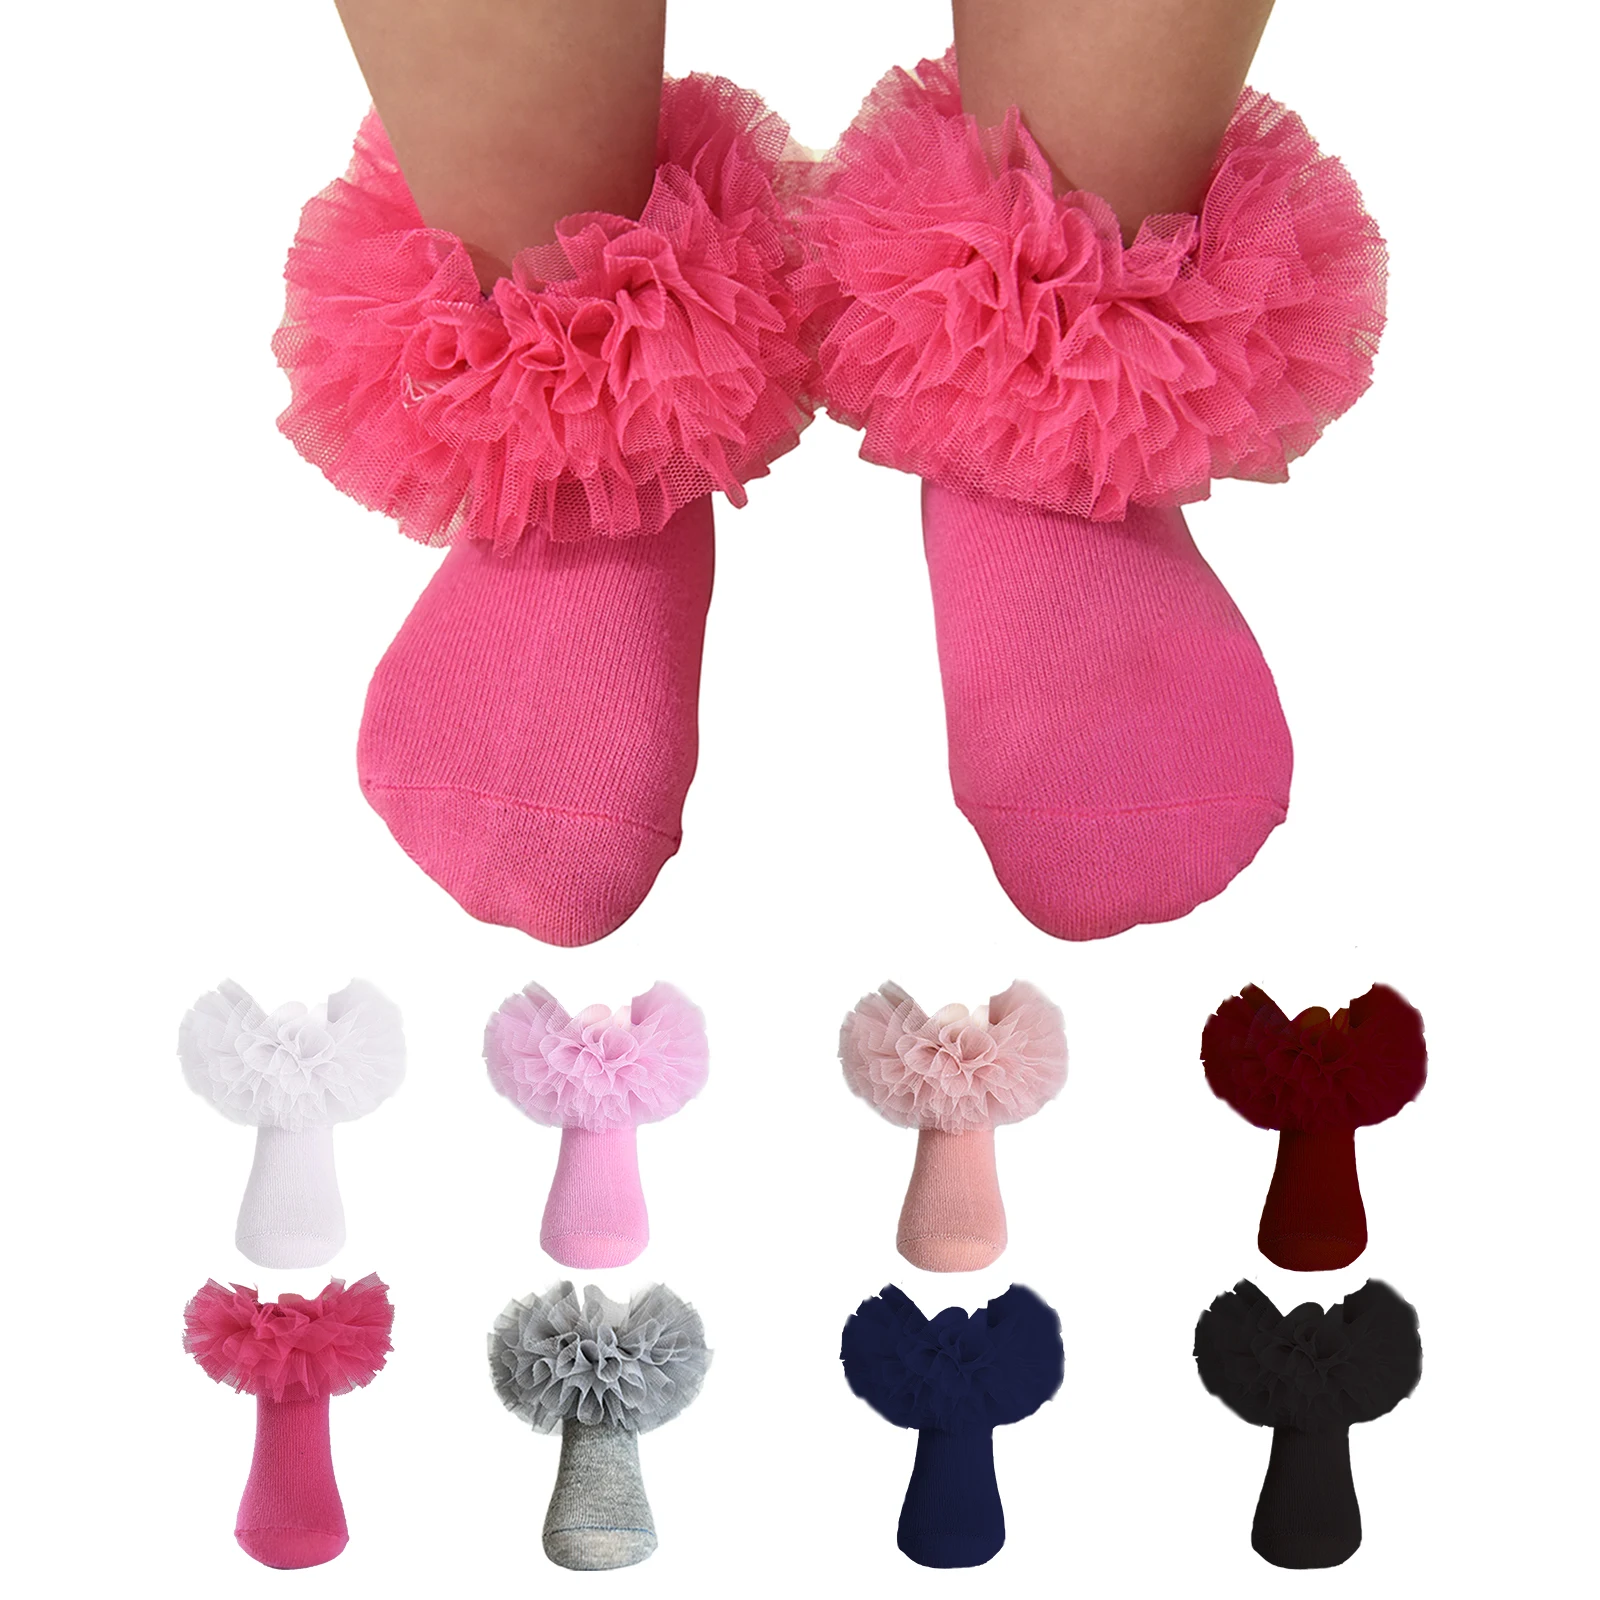 Calcetines esponjosos con volantes para niñas, calcetines de vestir de princesa, recién nacidos, bebés, niños pequeños, niñas